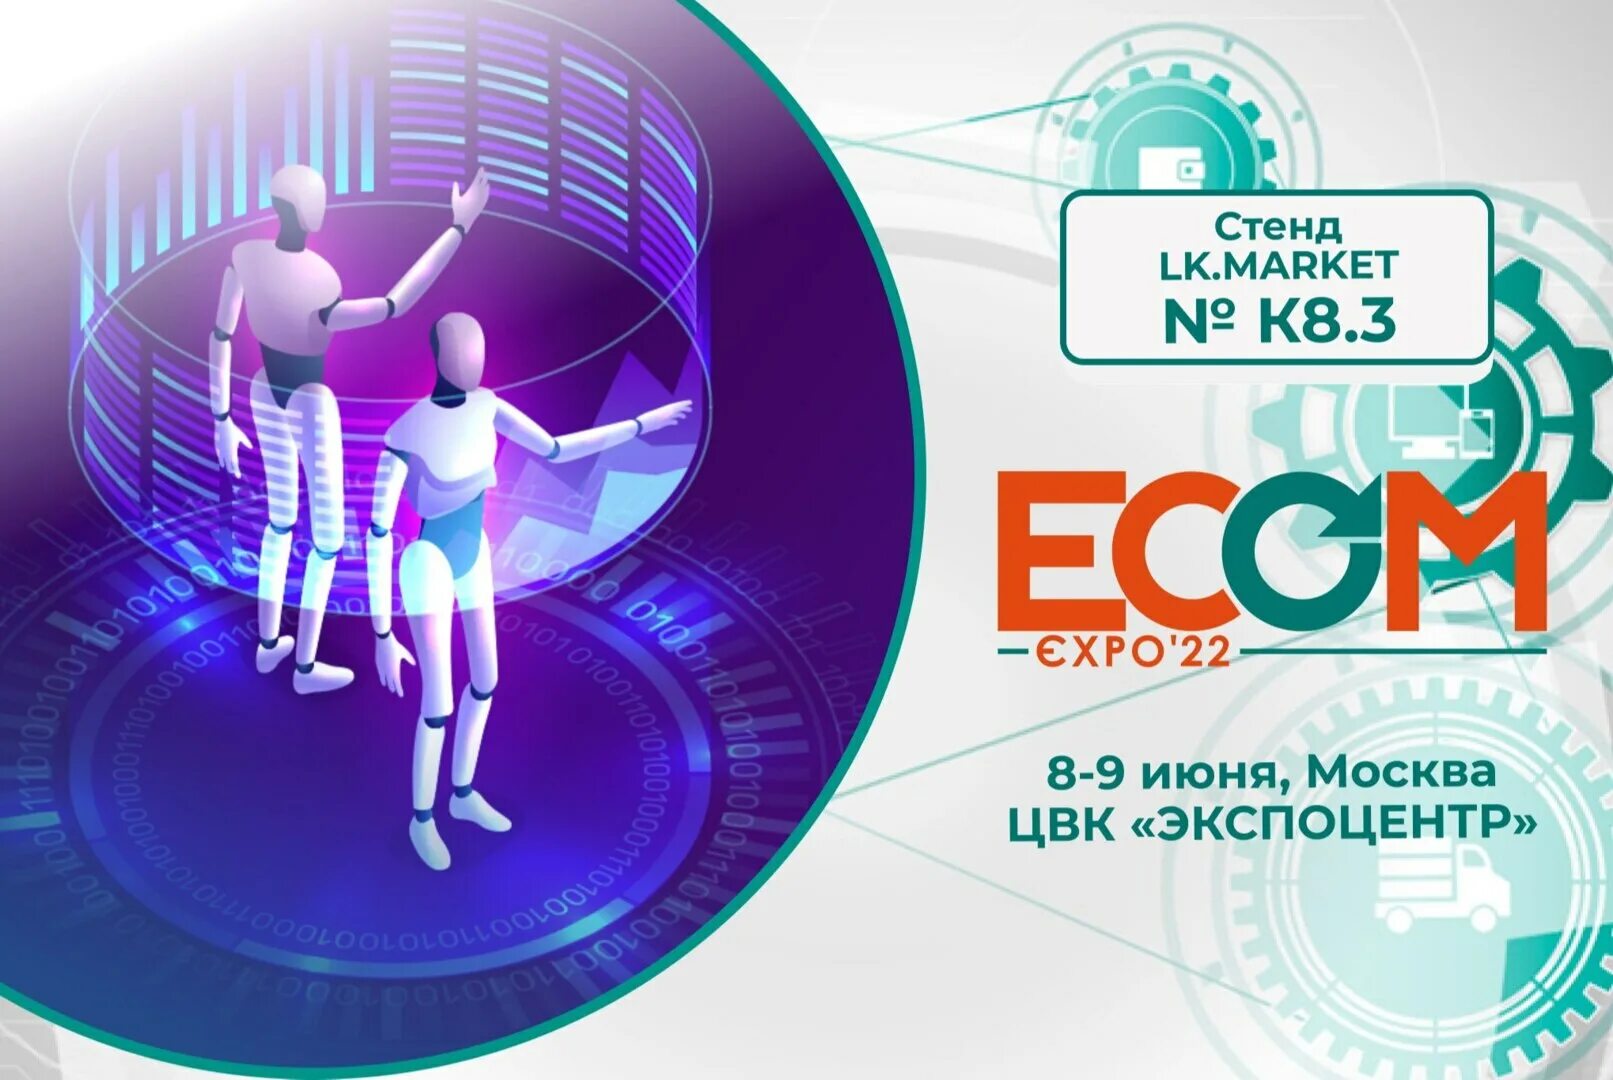 Экспо бизнес. Выставка ECOM Expo. ECOM Expo 2022. Выставка ECOM 2022 Москва. ECOM Expo 2022 логотип.